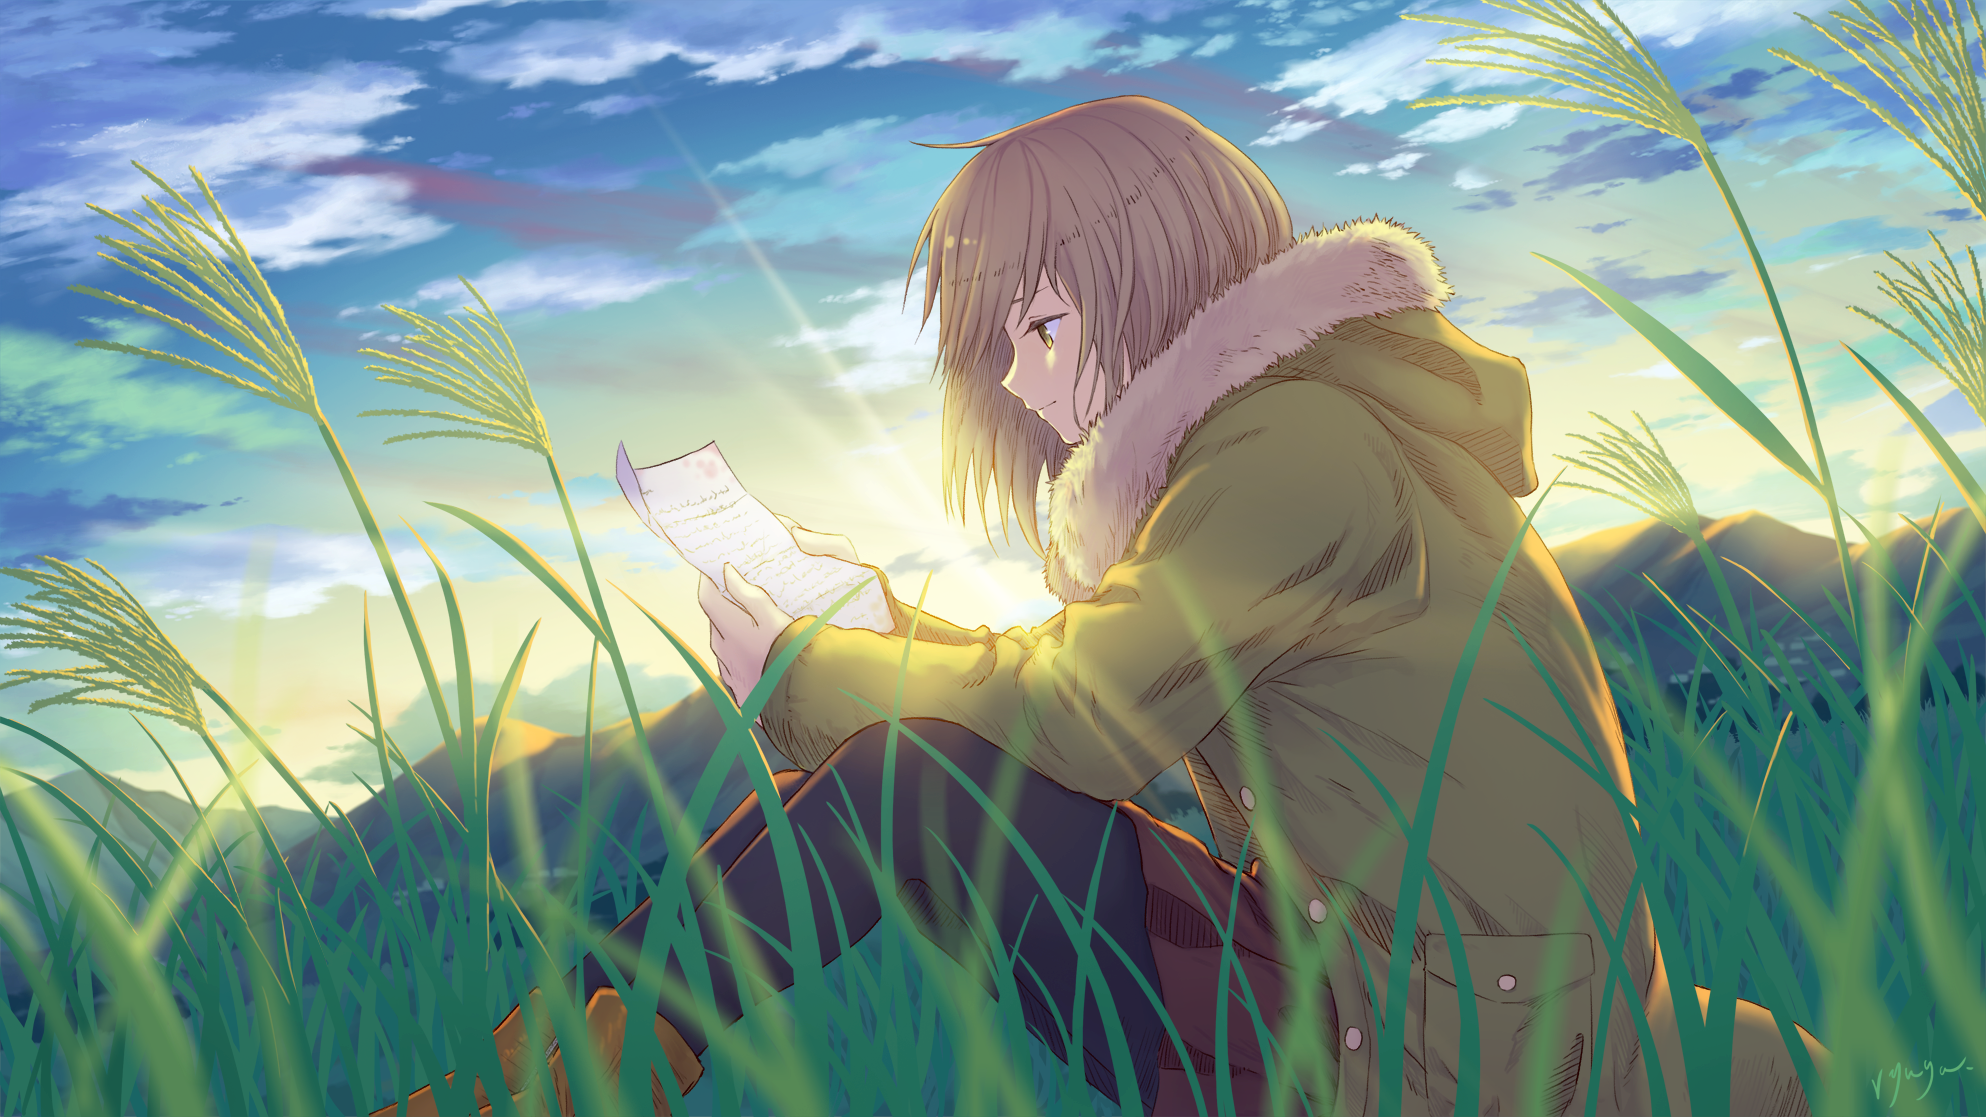 Anime girl reading books by Animeart790 on DeviantArt